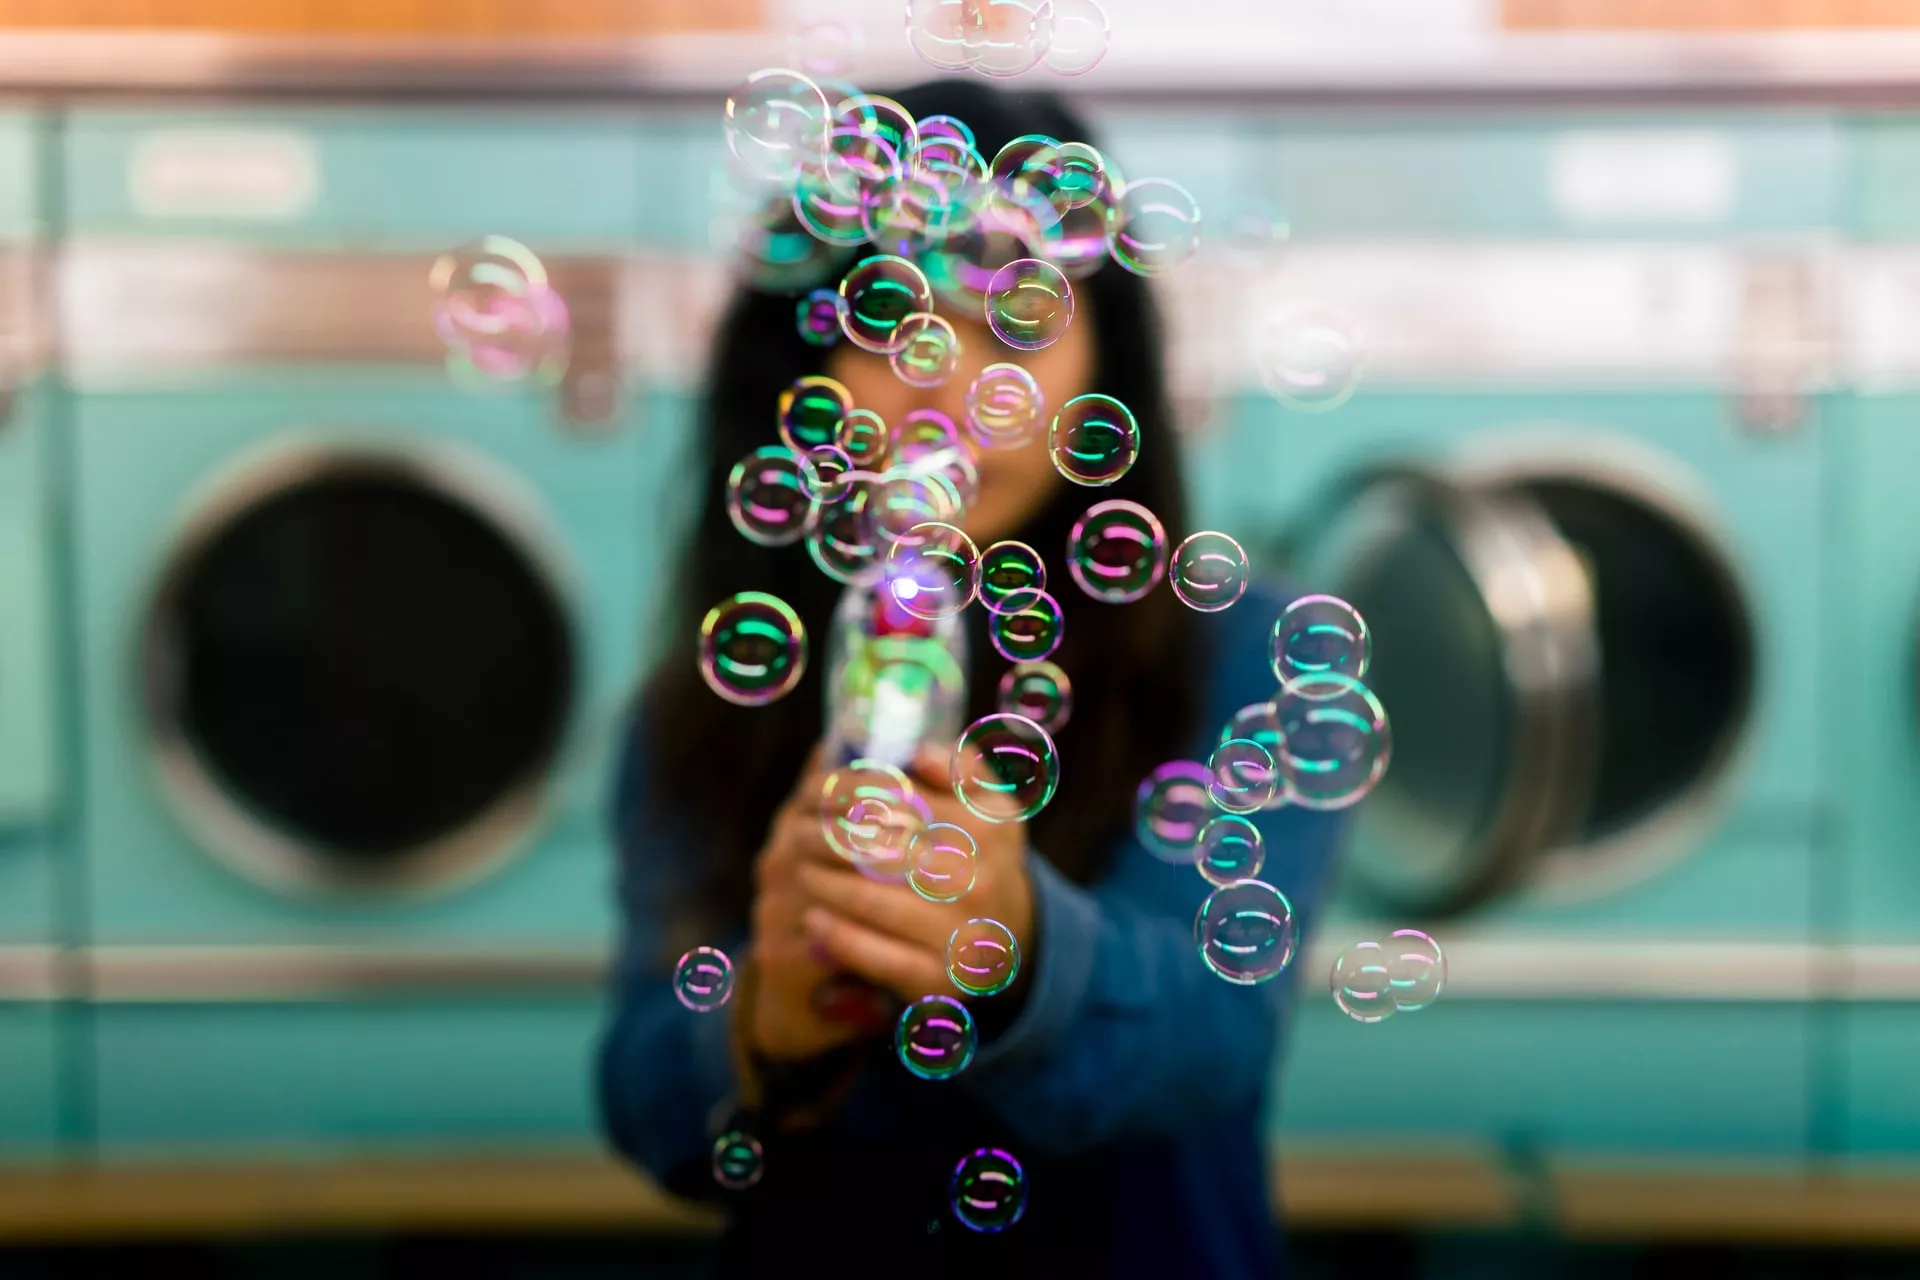 Если сложно представлять тревожные мысли в виже пузырей, то возьмите детские мыльные пузыри или приготовьте их из шампуня/жидкого мыла